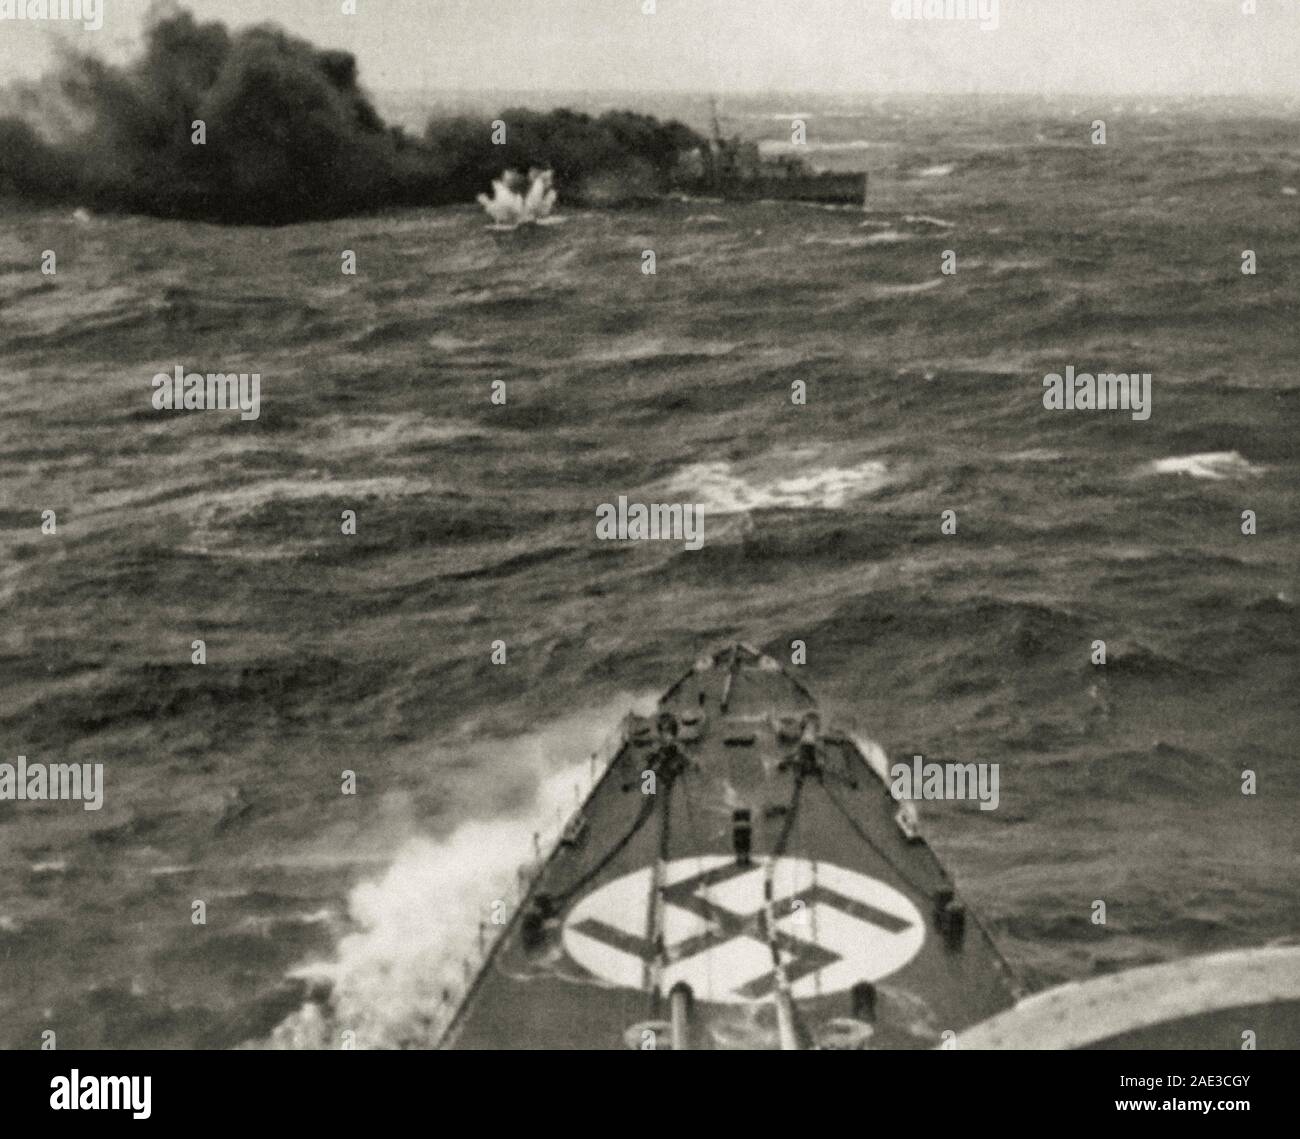 Le croiseur lourd allemand Admiral Hipper attaque le destroyer britannique HMS Glowworm. Le destroyer met un écran de fumée. Mer du Nord, près du port de Narv Banque D'Images